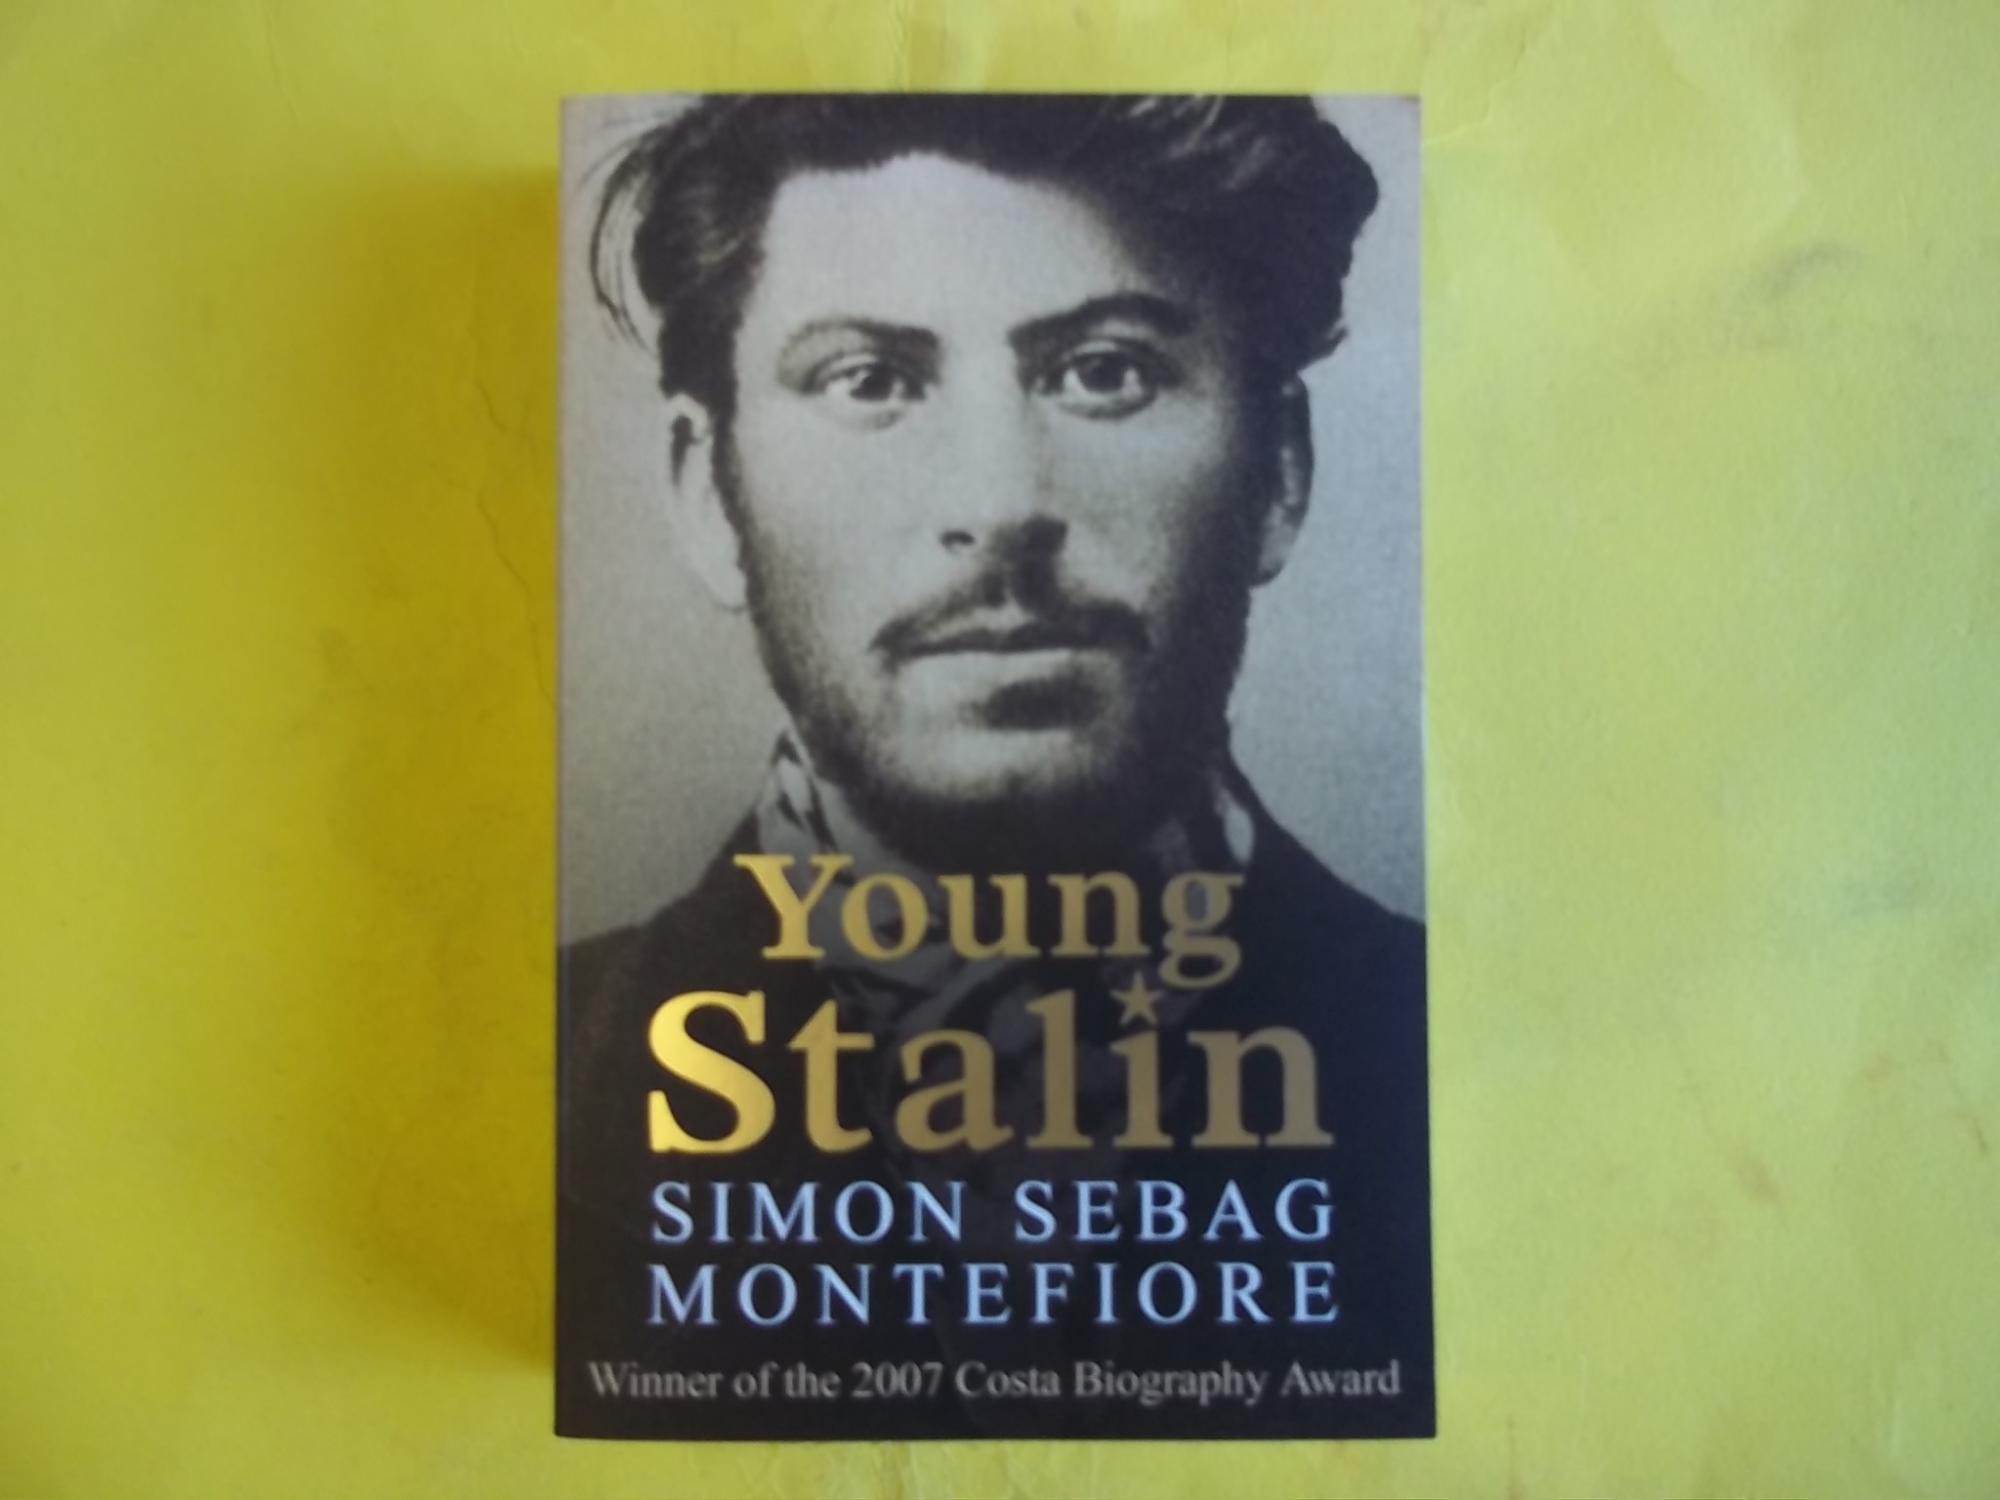 Young Stalin.Der junge Stalin, englische Ausgabe: Winner of the Costa Book Award 2007, Biography Award and Bruno-Kreisky-Preis für das politische Buch 2007